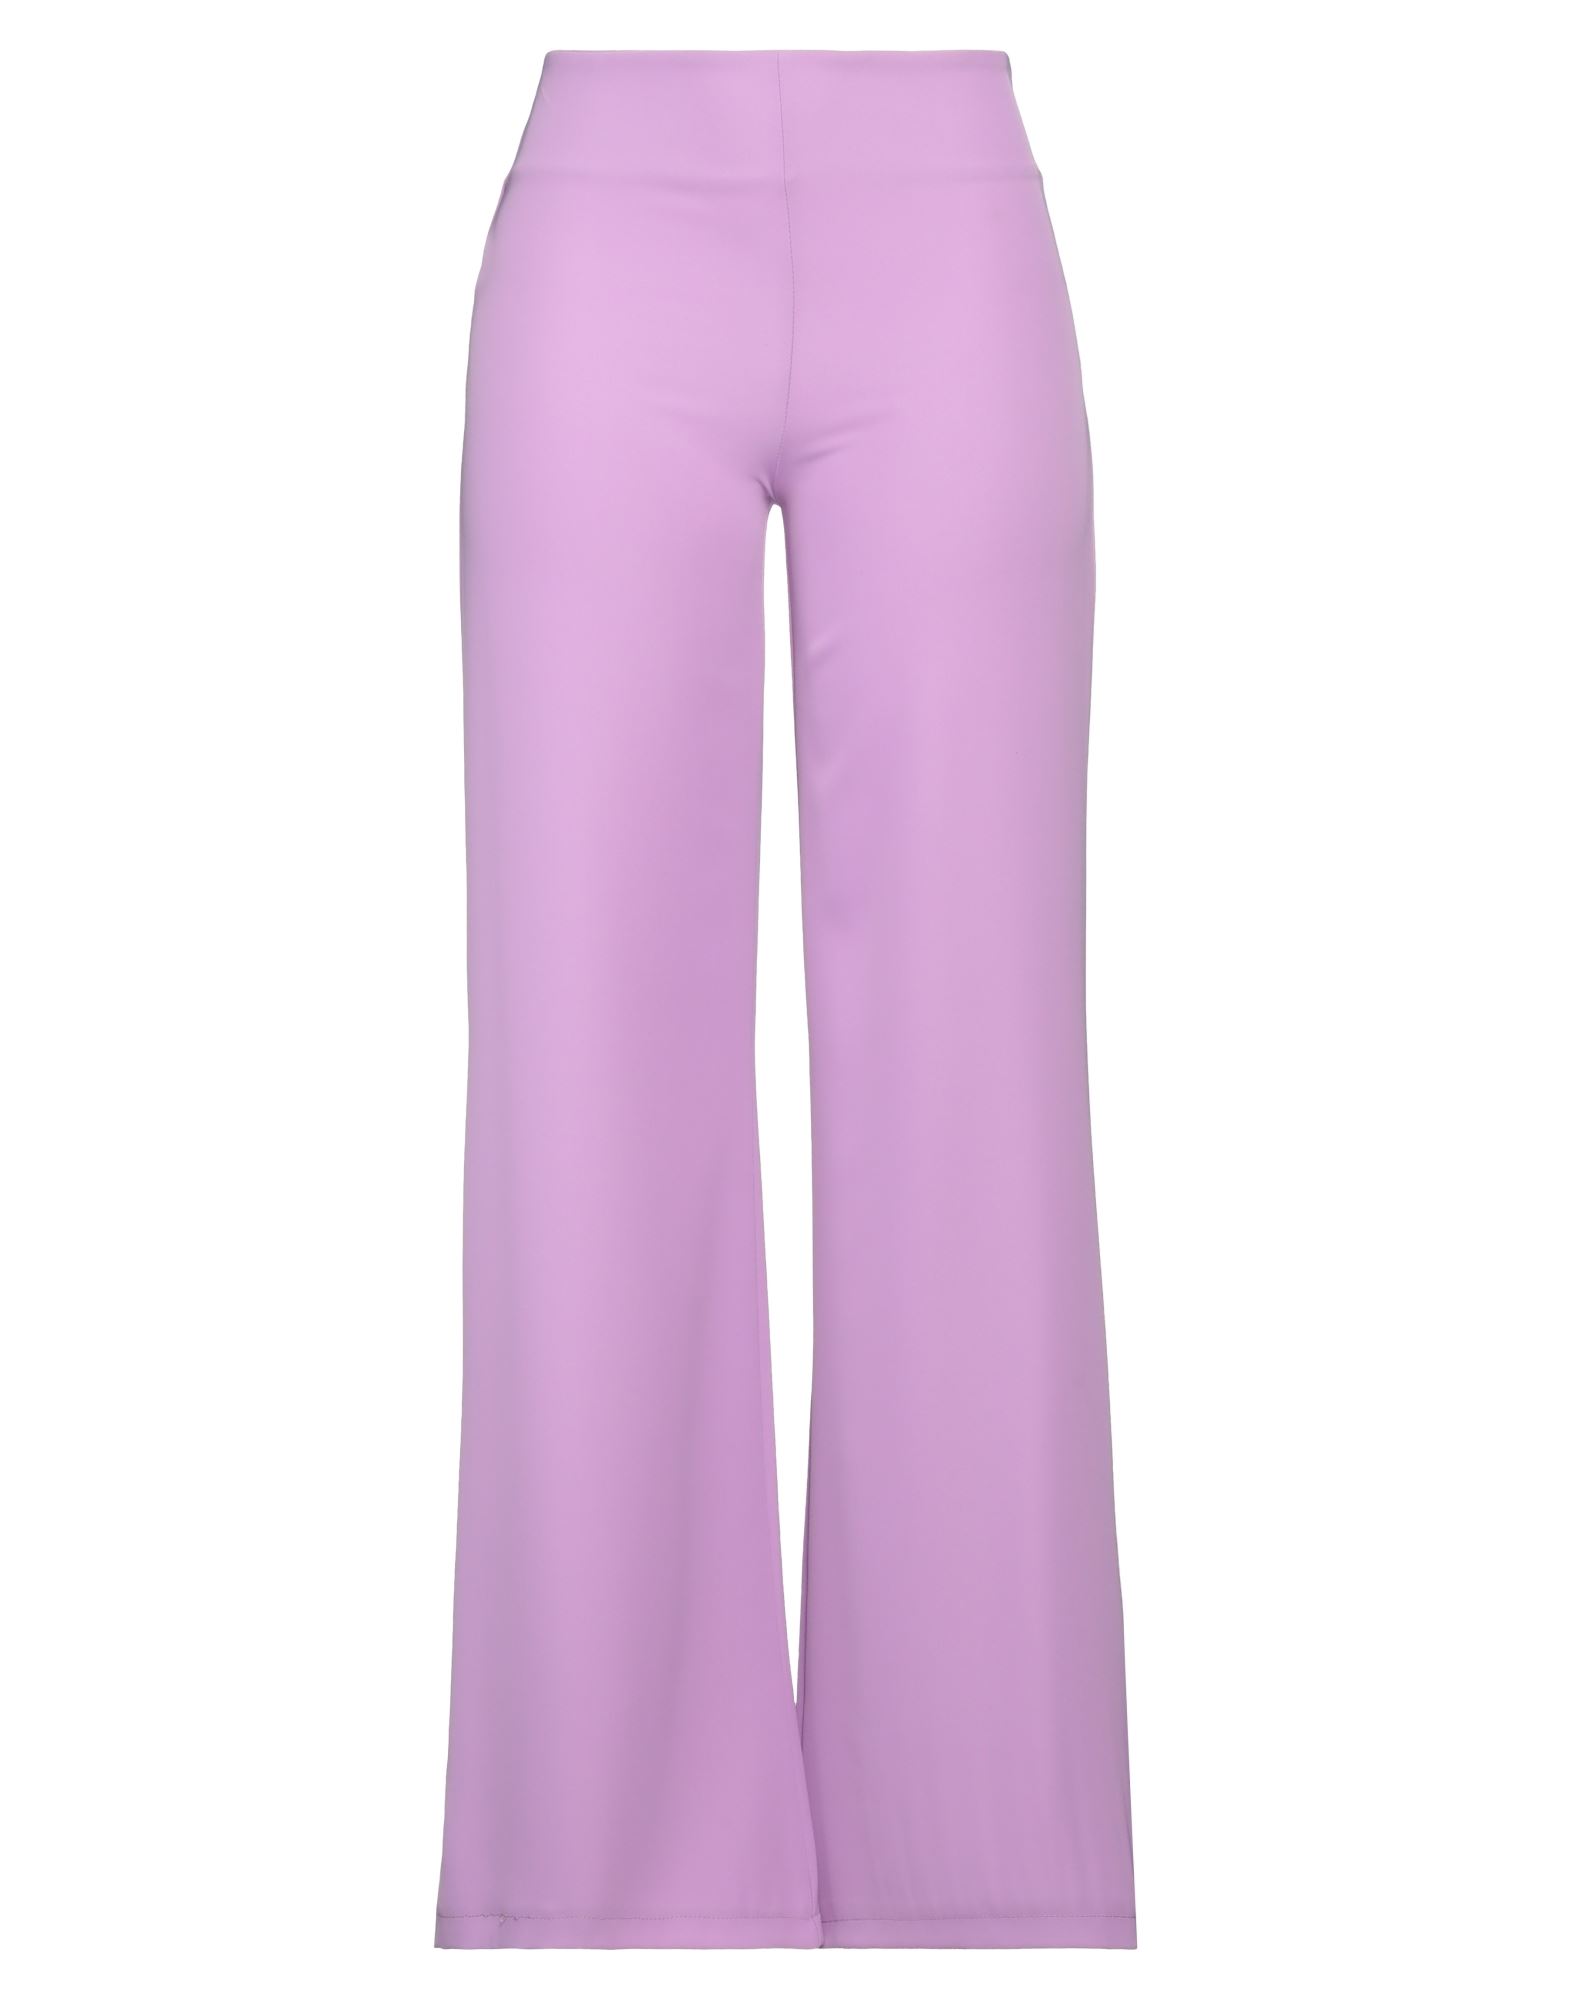 Mironcè Woman Pants Lilac Size 6 Polyester, Elastane In Purple